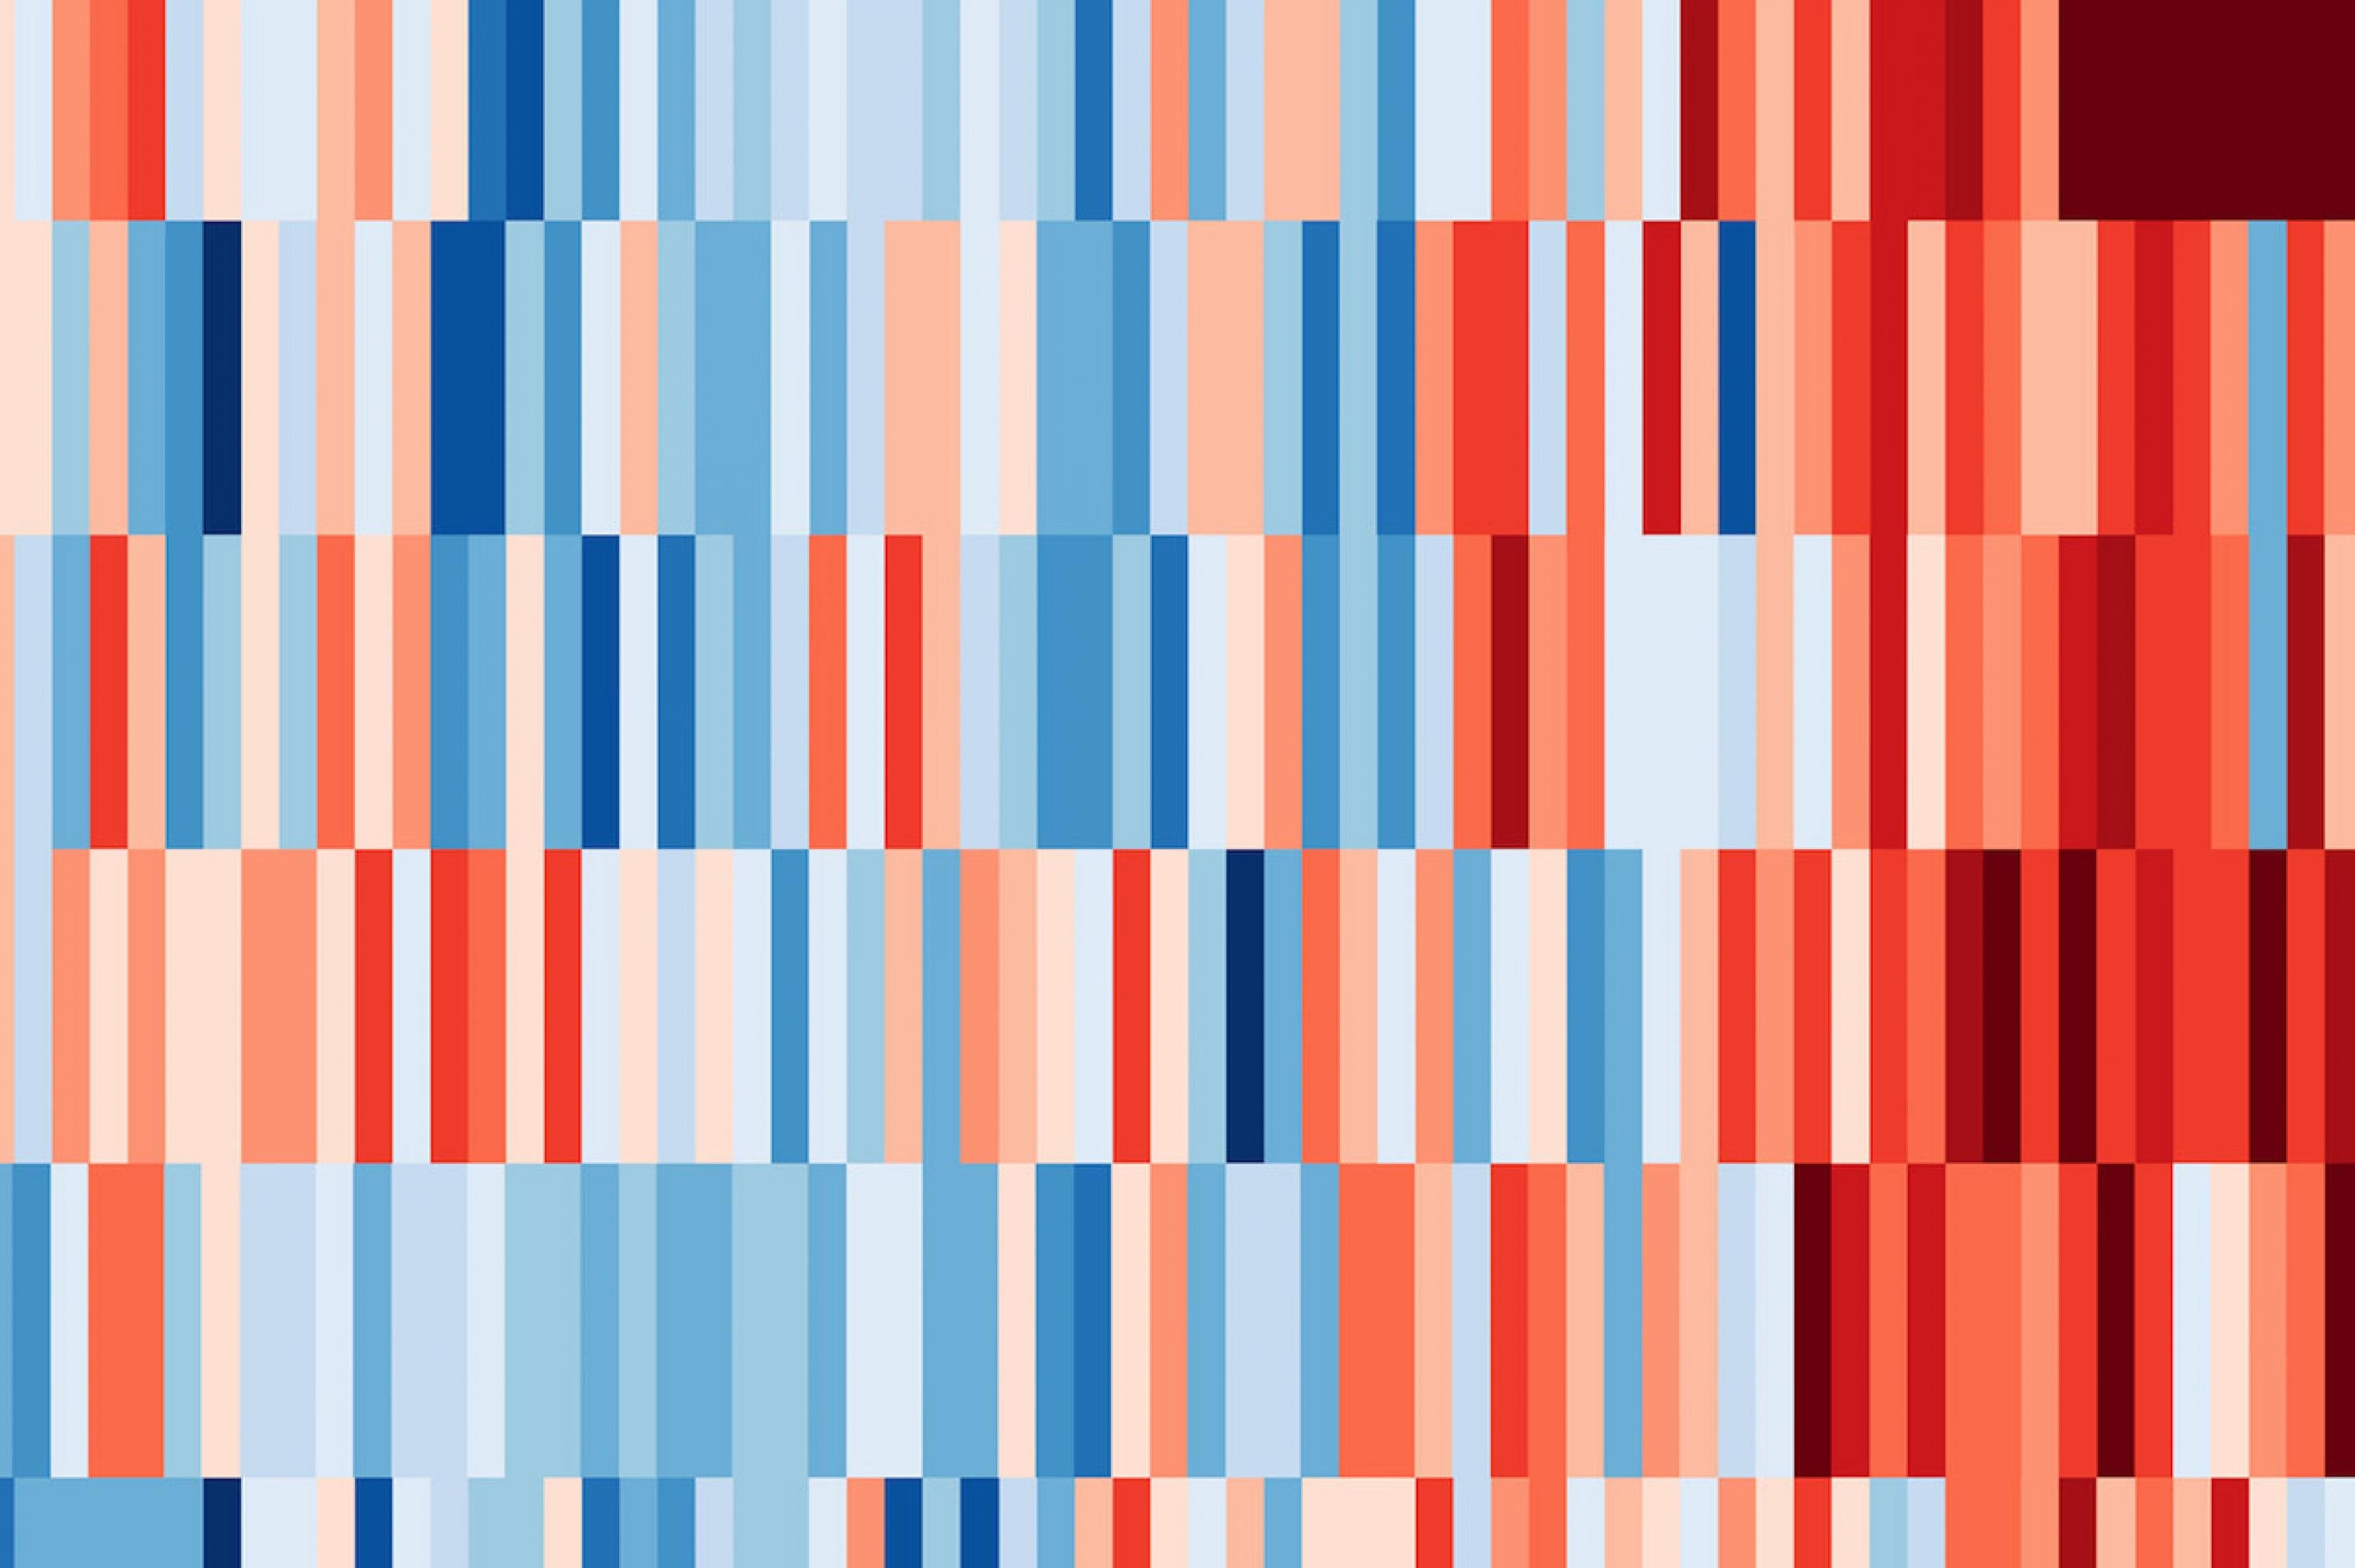 Eine Grafik mit vielen senkrechten blauen und roten Streifen, die in acht breiten, waagerechten Bändern angeordnet sind. – 
Warming Stripes 1901 bis 2018 für (von oben): die Welt, die Arktis, Deutschland, Norwegen, Grönland, die USA, Australien und Südafrika. Die Streifen haben jeweils eine eigene Farbskala.